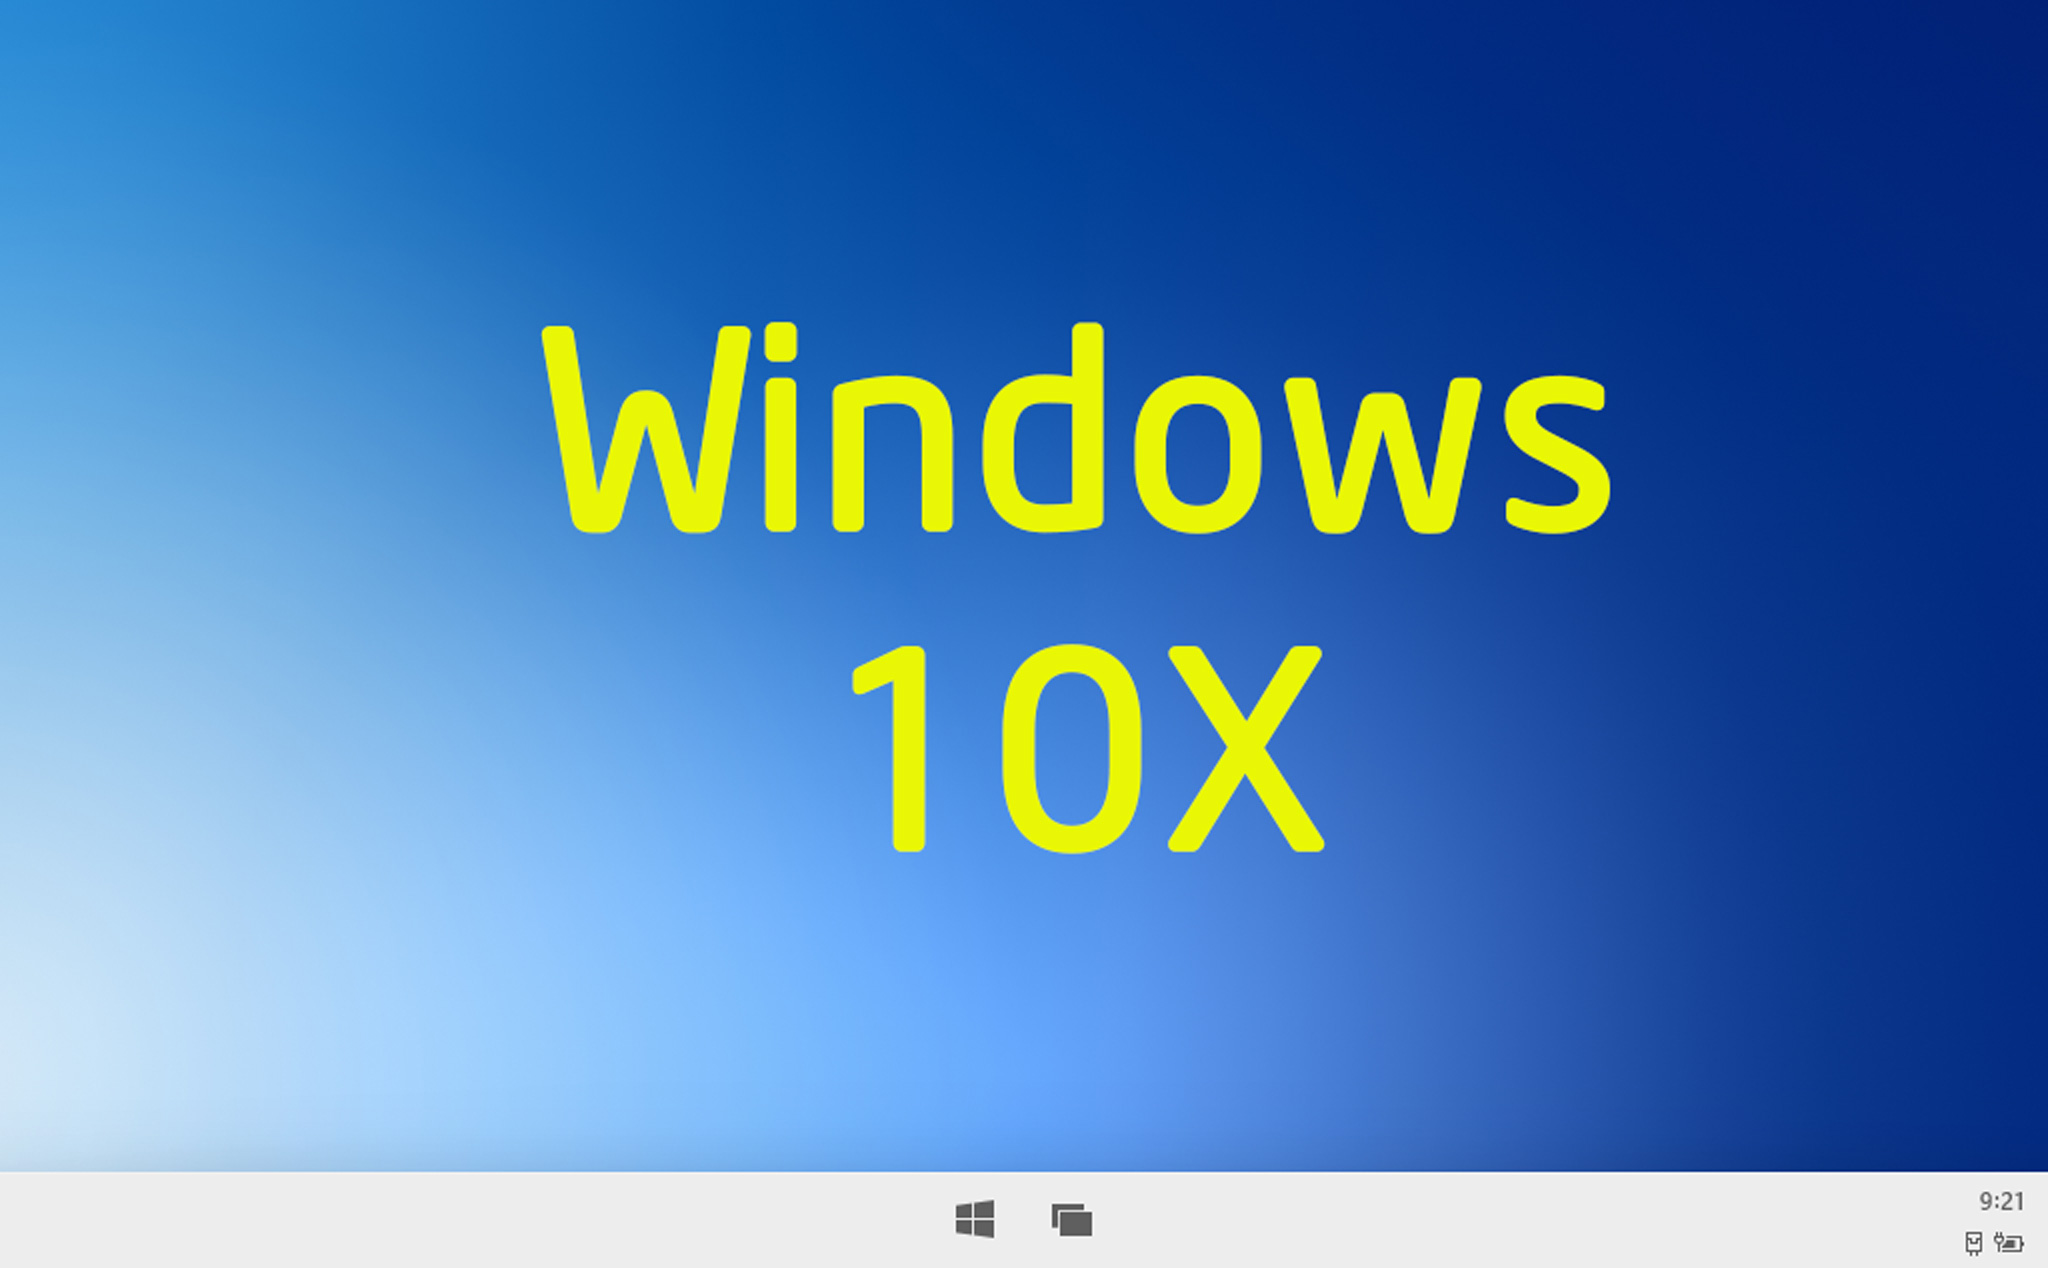 Trải nghiệm Windows 10X: giao diện đơn giản, không cài được app Win32, không còn giao diện đa cửa sổ